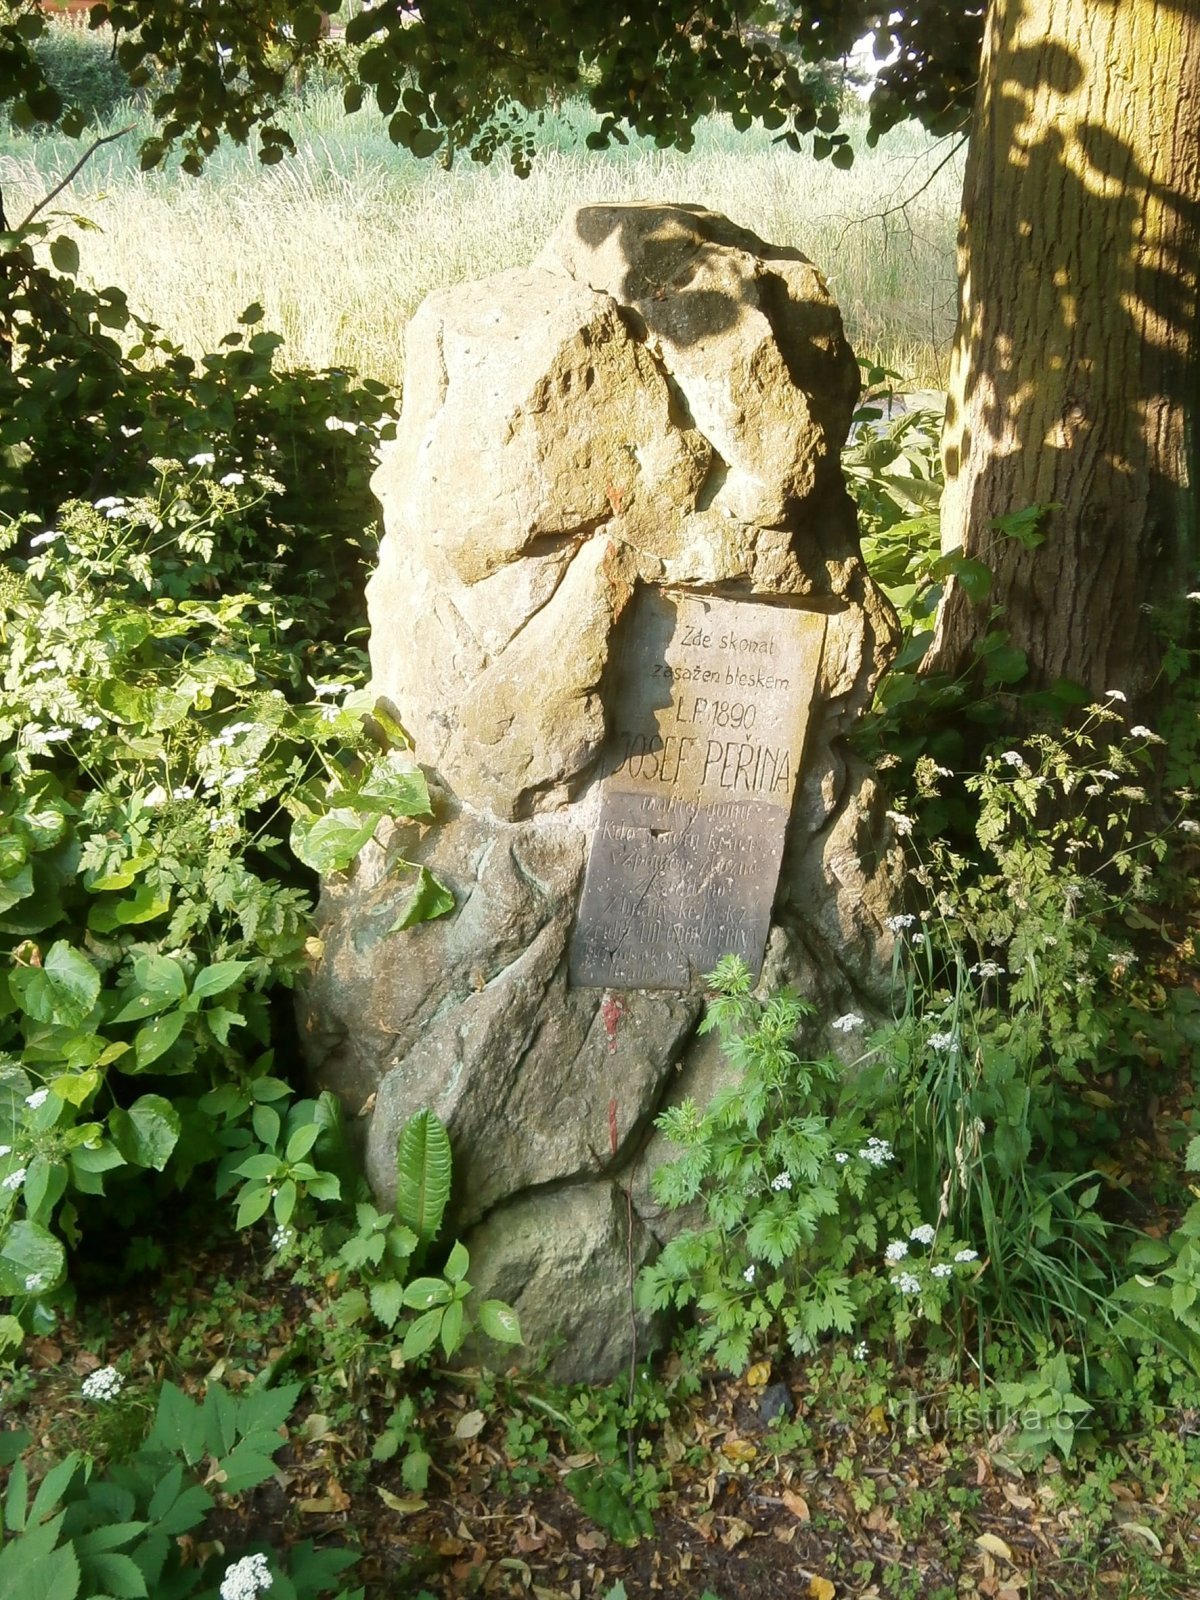 Пам'ятник Йозефу Першині (Градец Кралове, 23.6.2013)